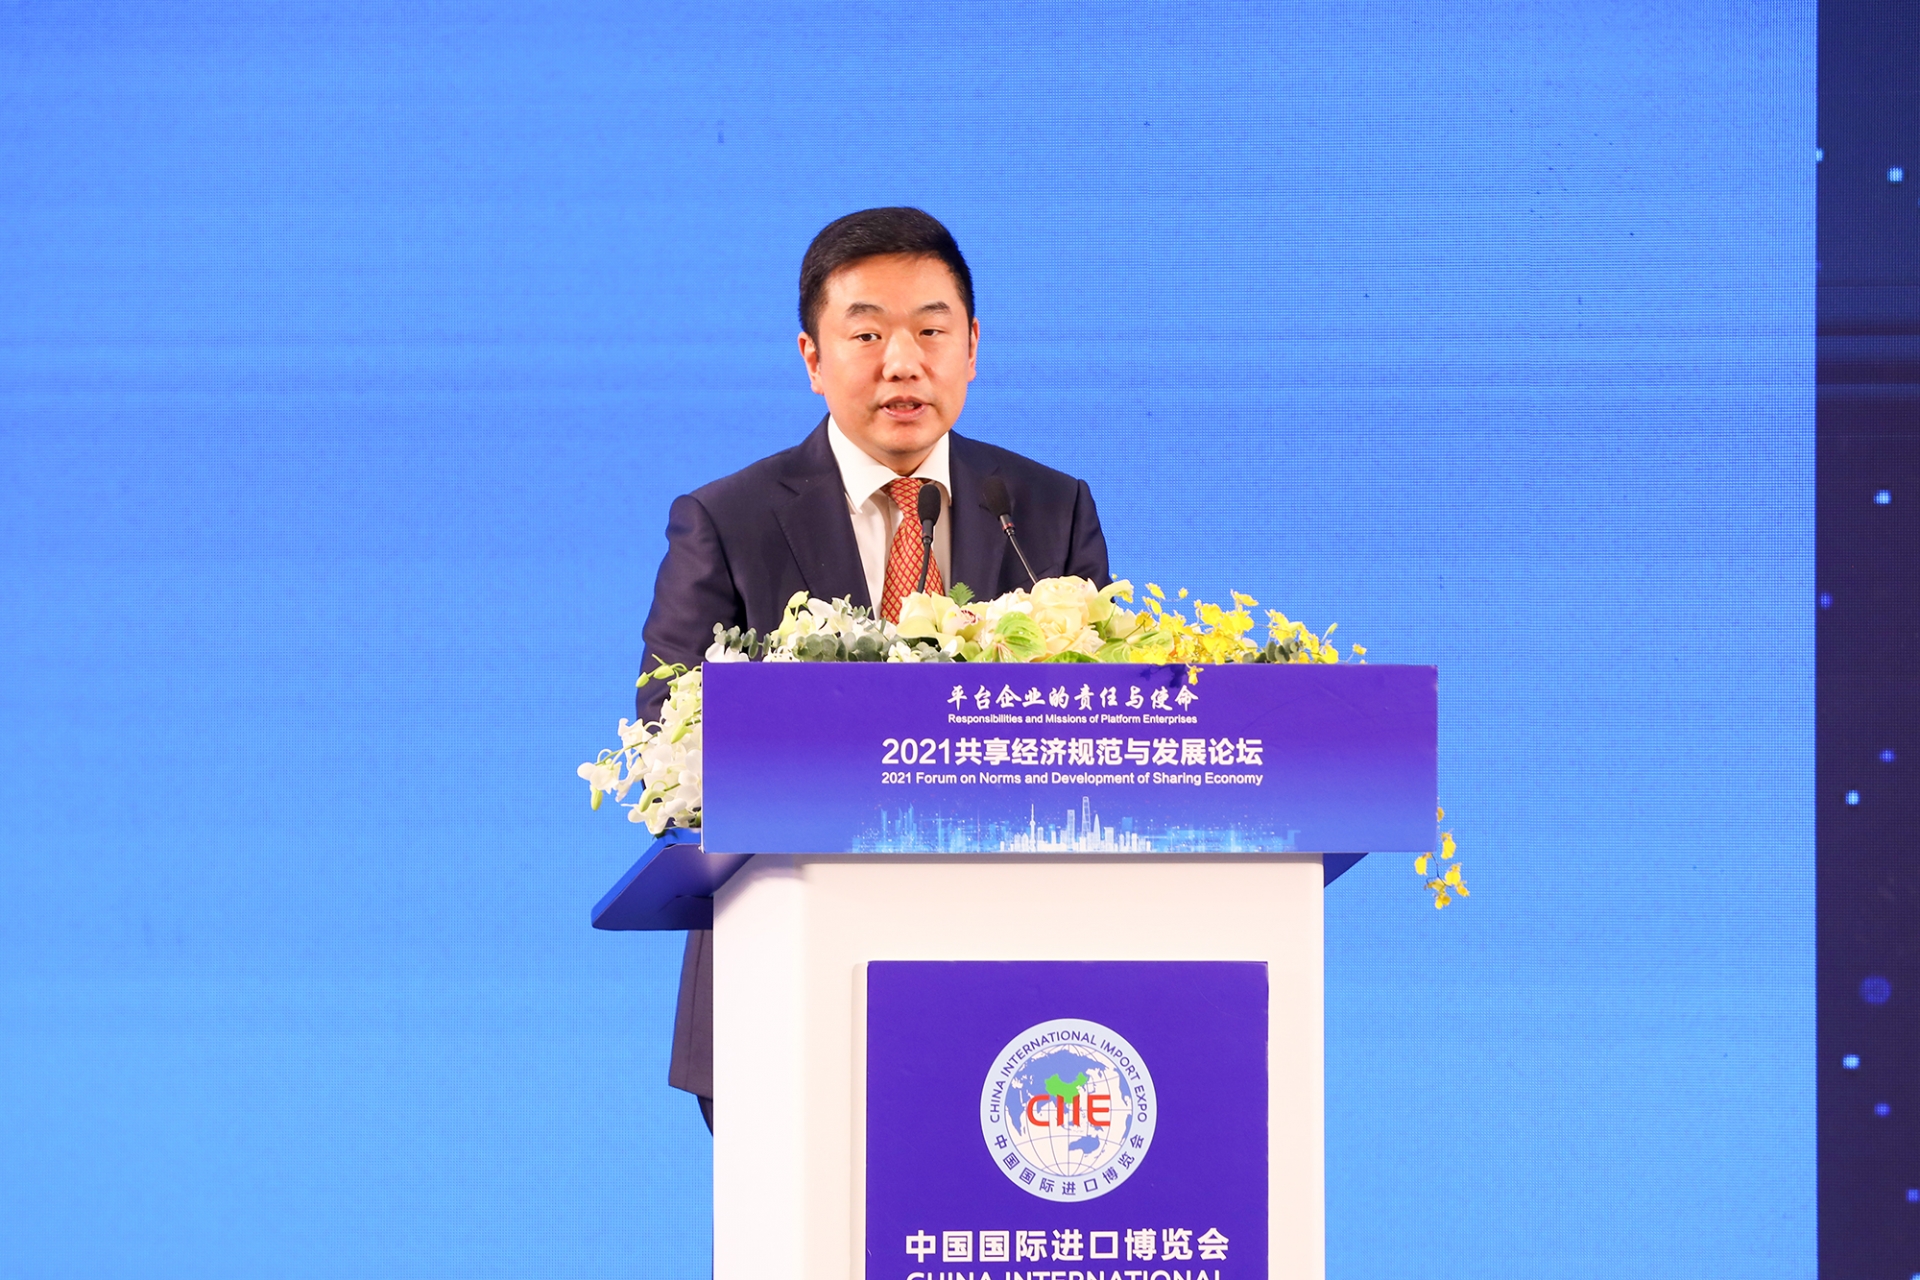 上海市市场监督管理局党组书记、副局长倪俊南先生发表演讲。.jpeg